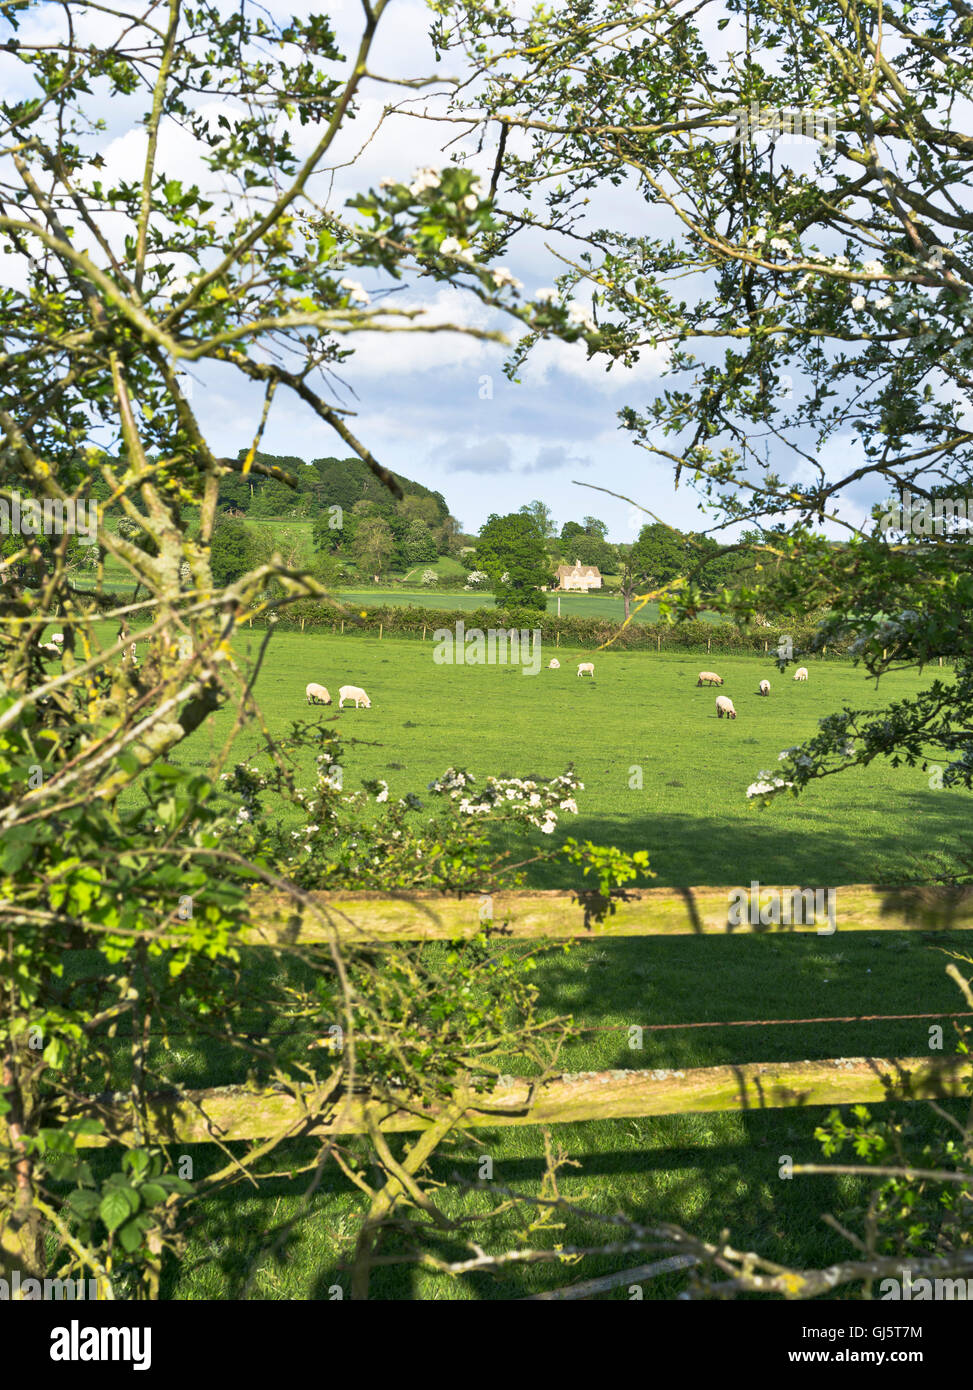 dh English paysage royaume-uni COTSWOLDS GLOUCESTERSHIRE Springagbs champ été moutons cotswold rural champs de ferme Angleterre terres agricoles belle campagne Banque D'Images